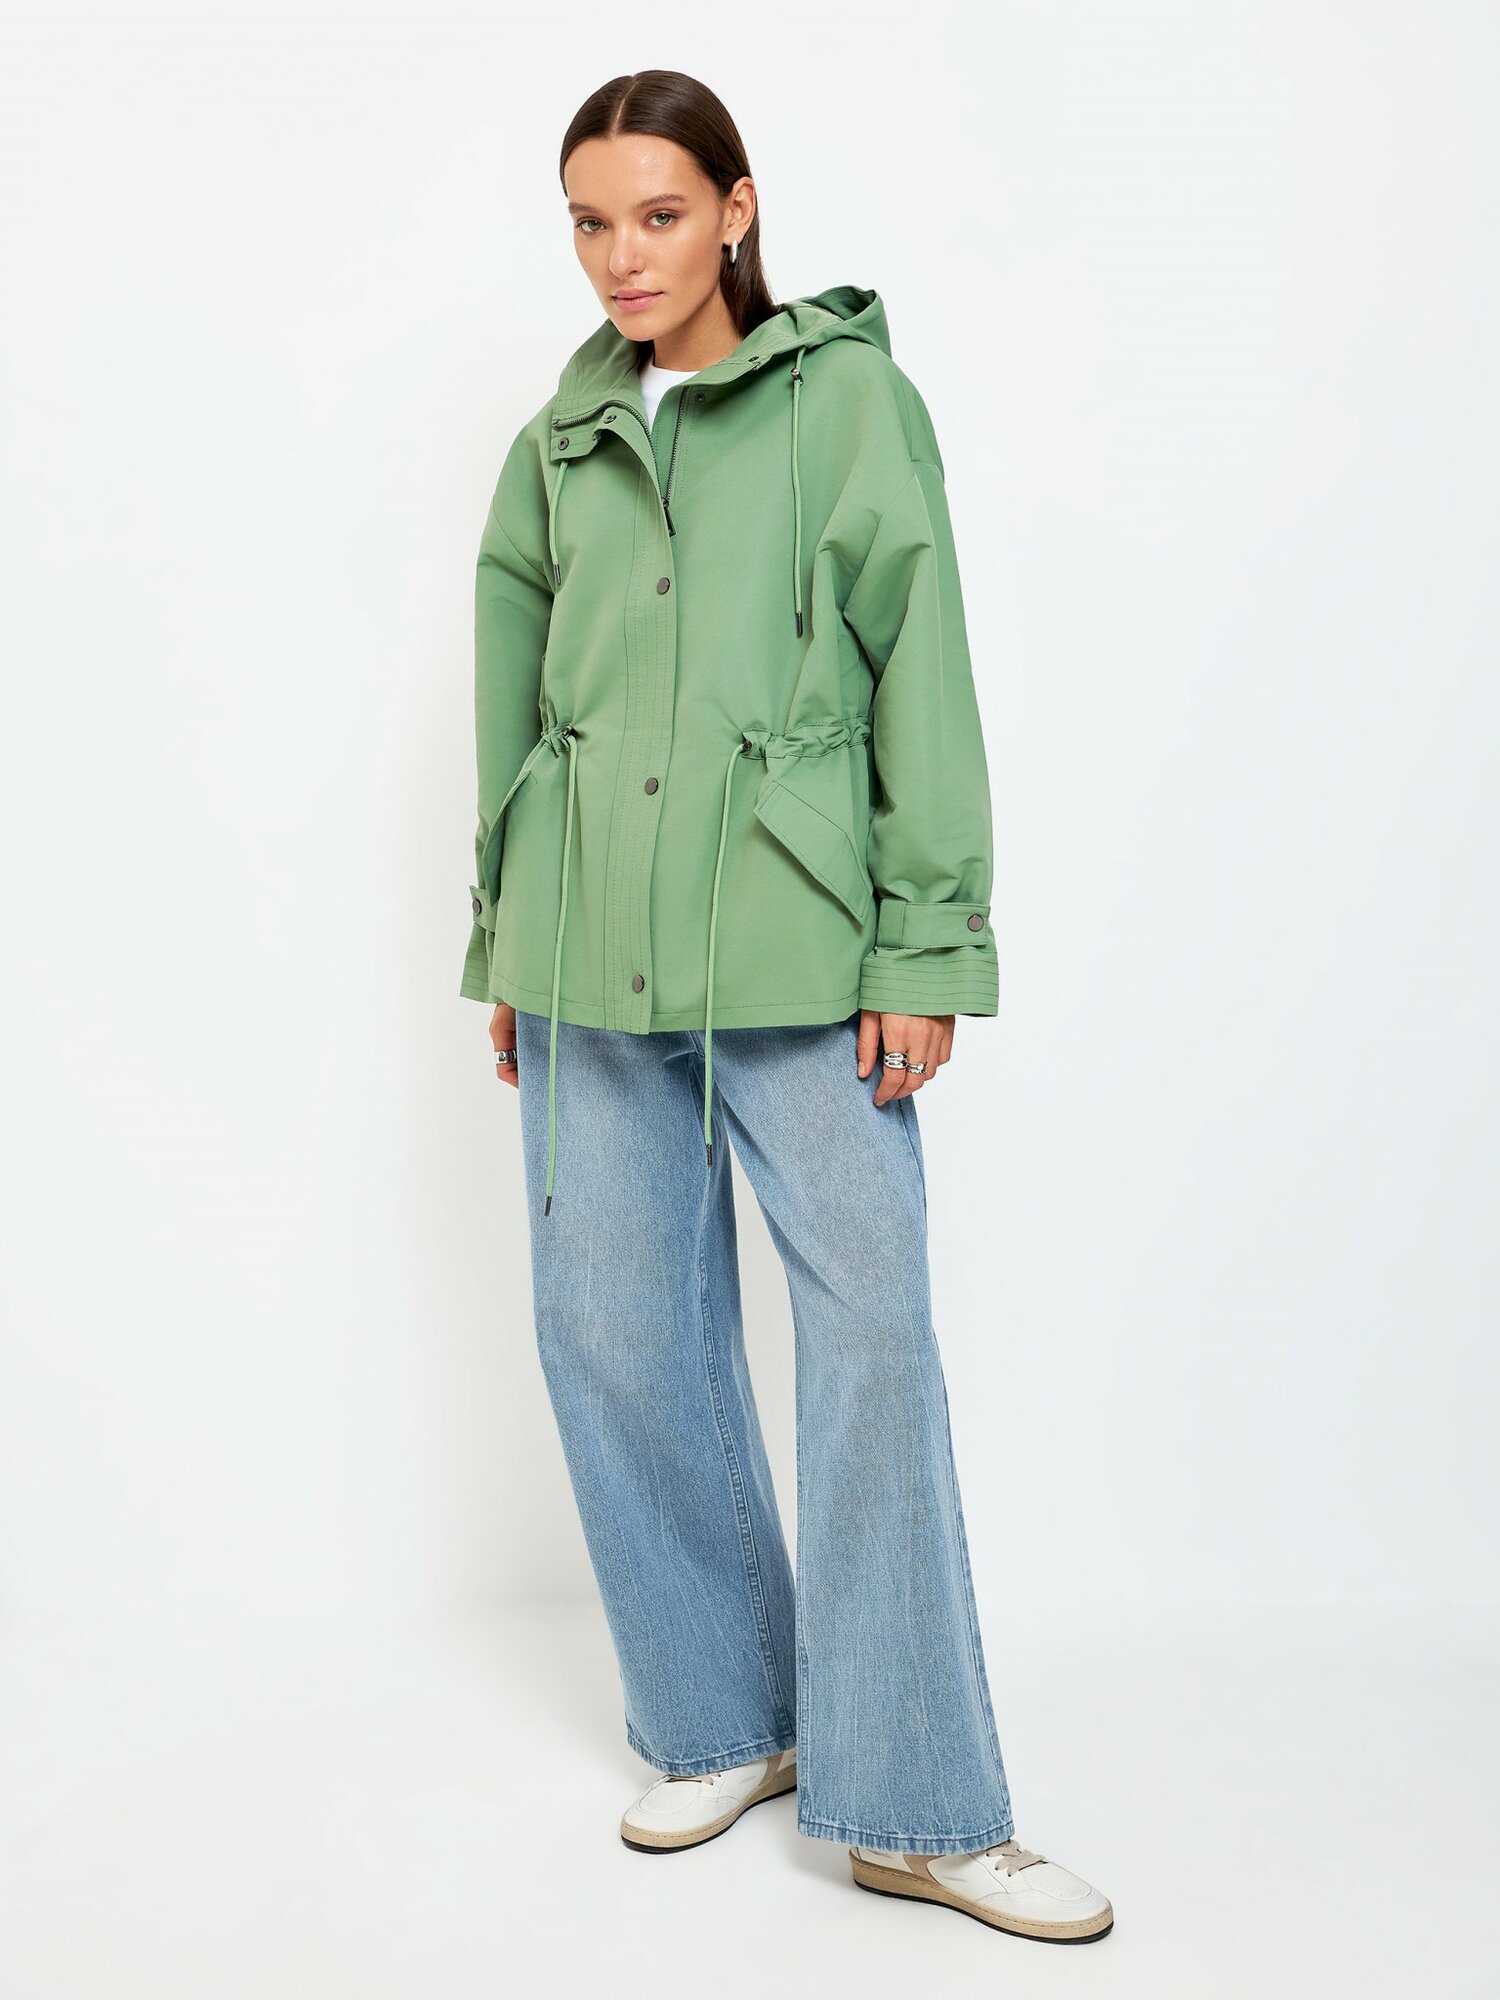 Куртка CONCEPT CLUB Cedar сине-зеленый Женский M размер